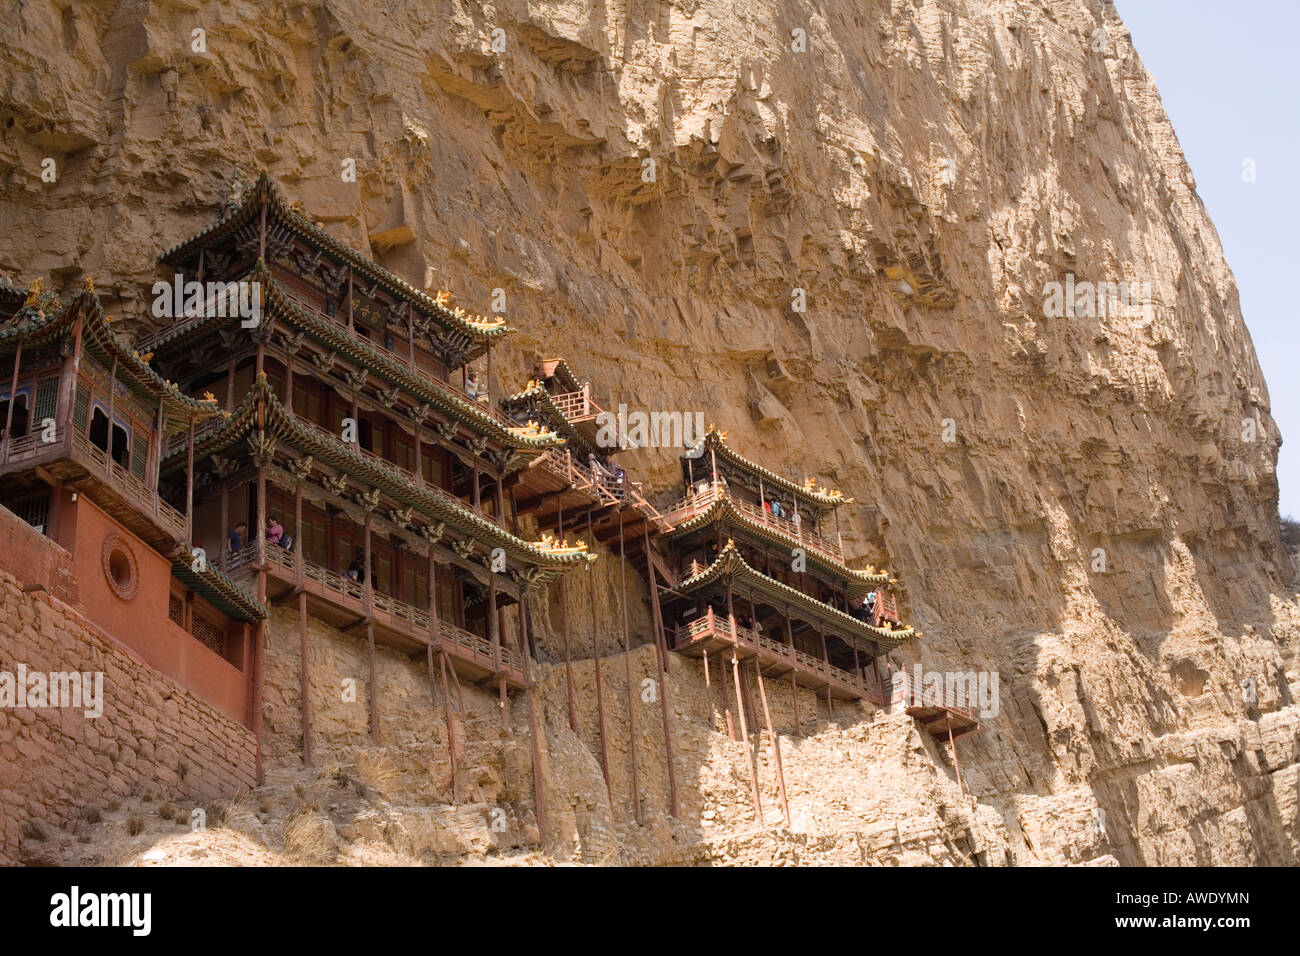 La pendaison, Monastère Xuankong Si, dans la province du Shanxi, République populaire de Chine Banque D'Images